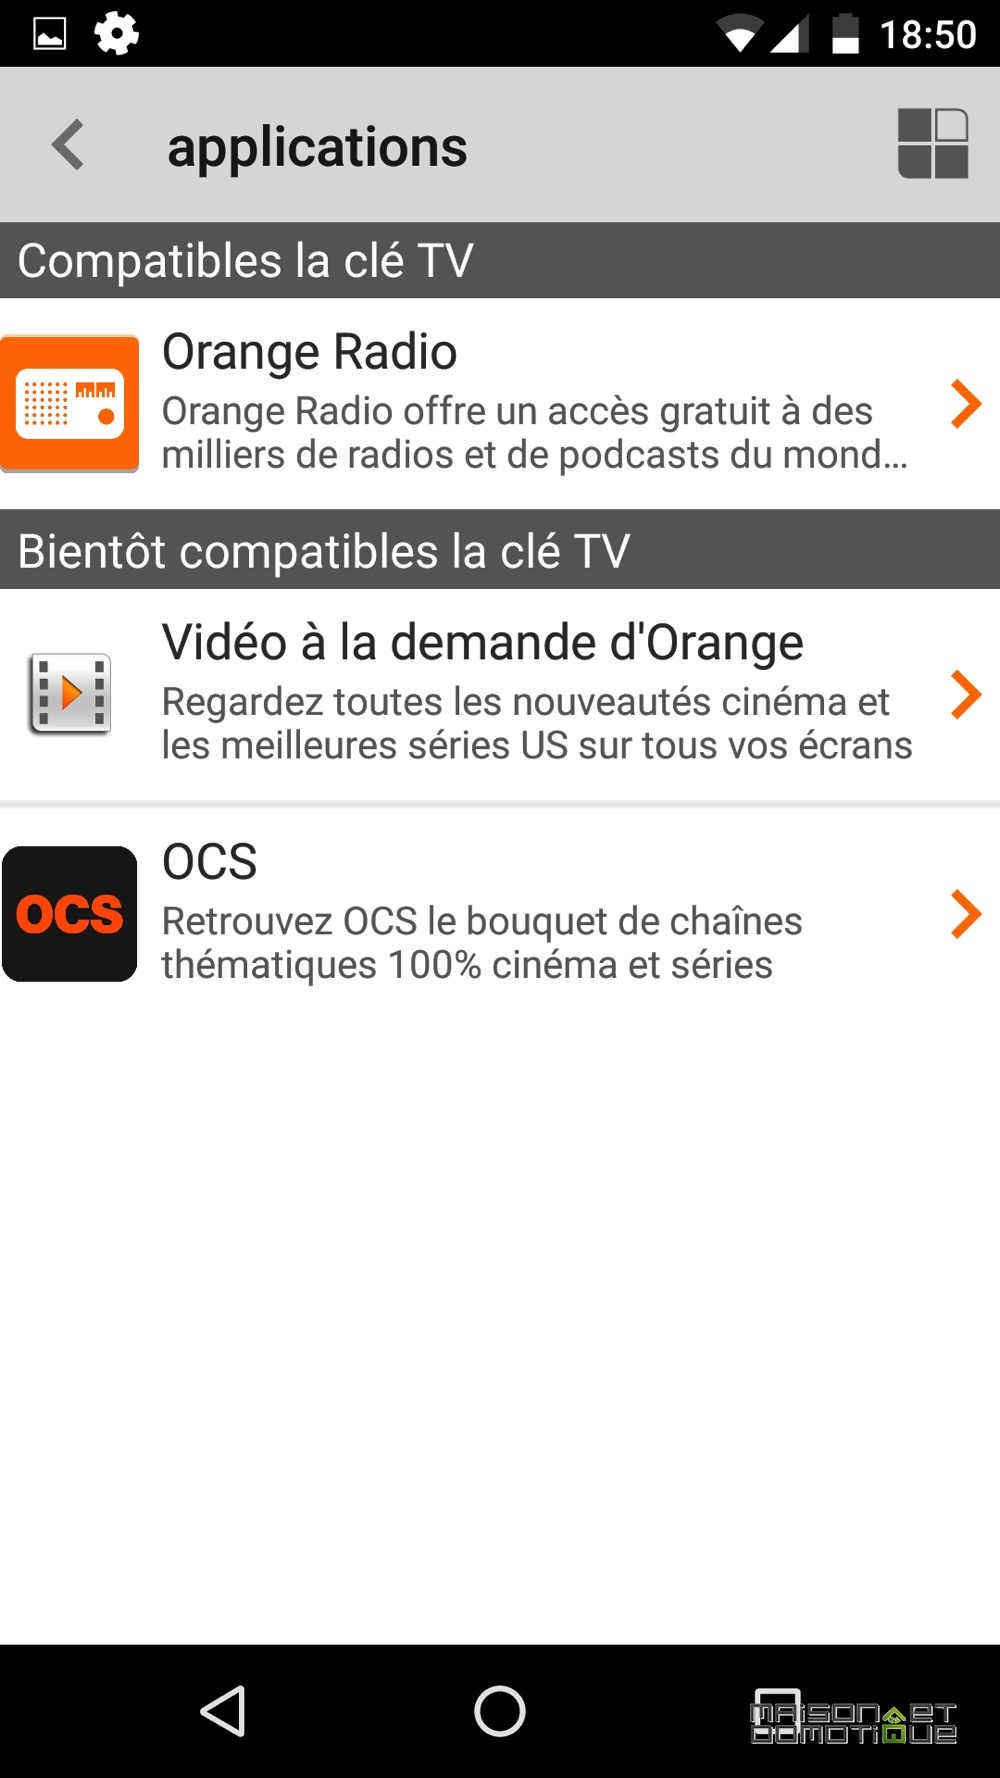 La clé TV Orange, un petit décodeur pour profiter de vos chaînes TV en  vacances - Comparatif d'Offres de BOX Internet et Forfaits Mobiles.